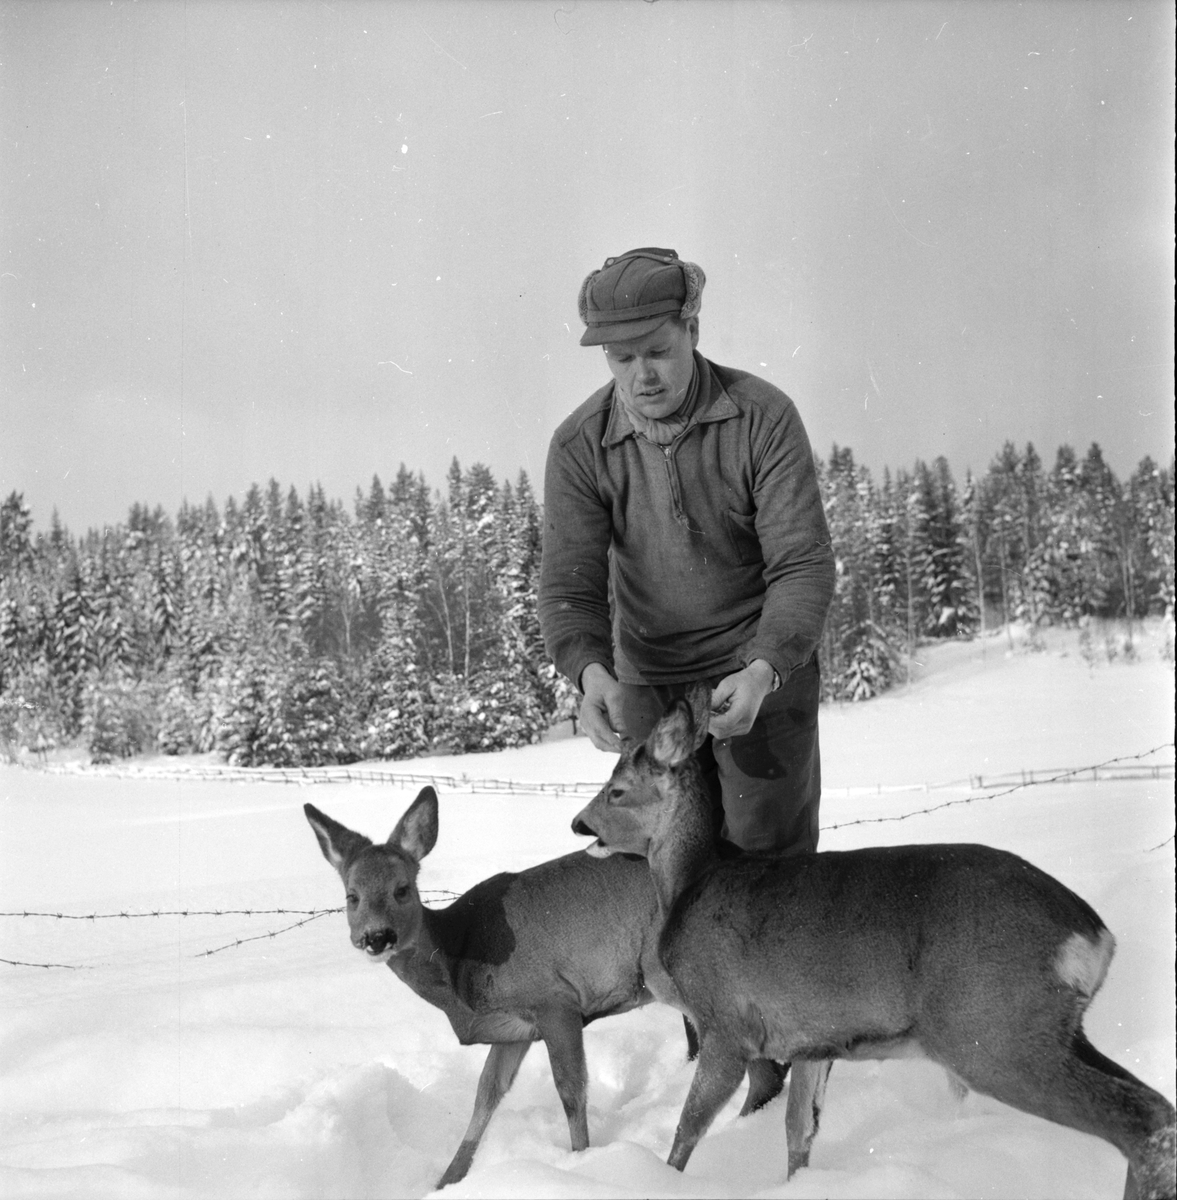 Söräng,
Kilen,
Tama rådjur hos Prins Olle,
Februari 1956